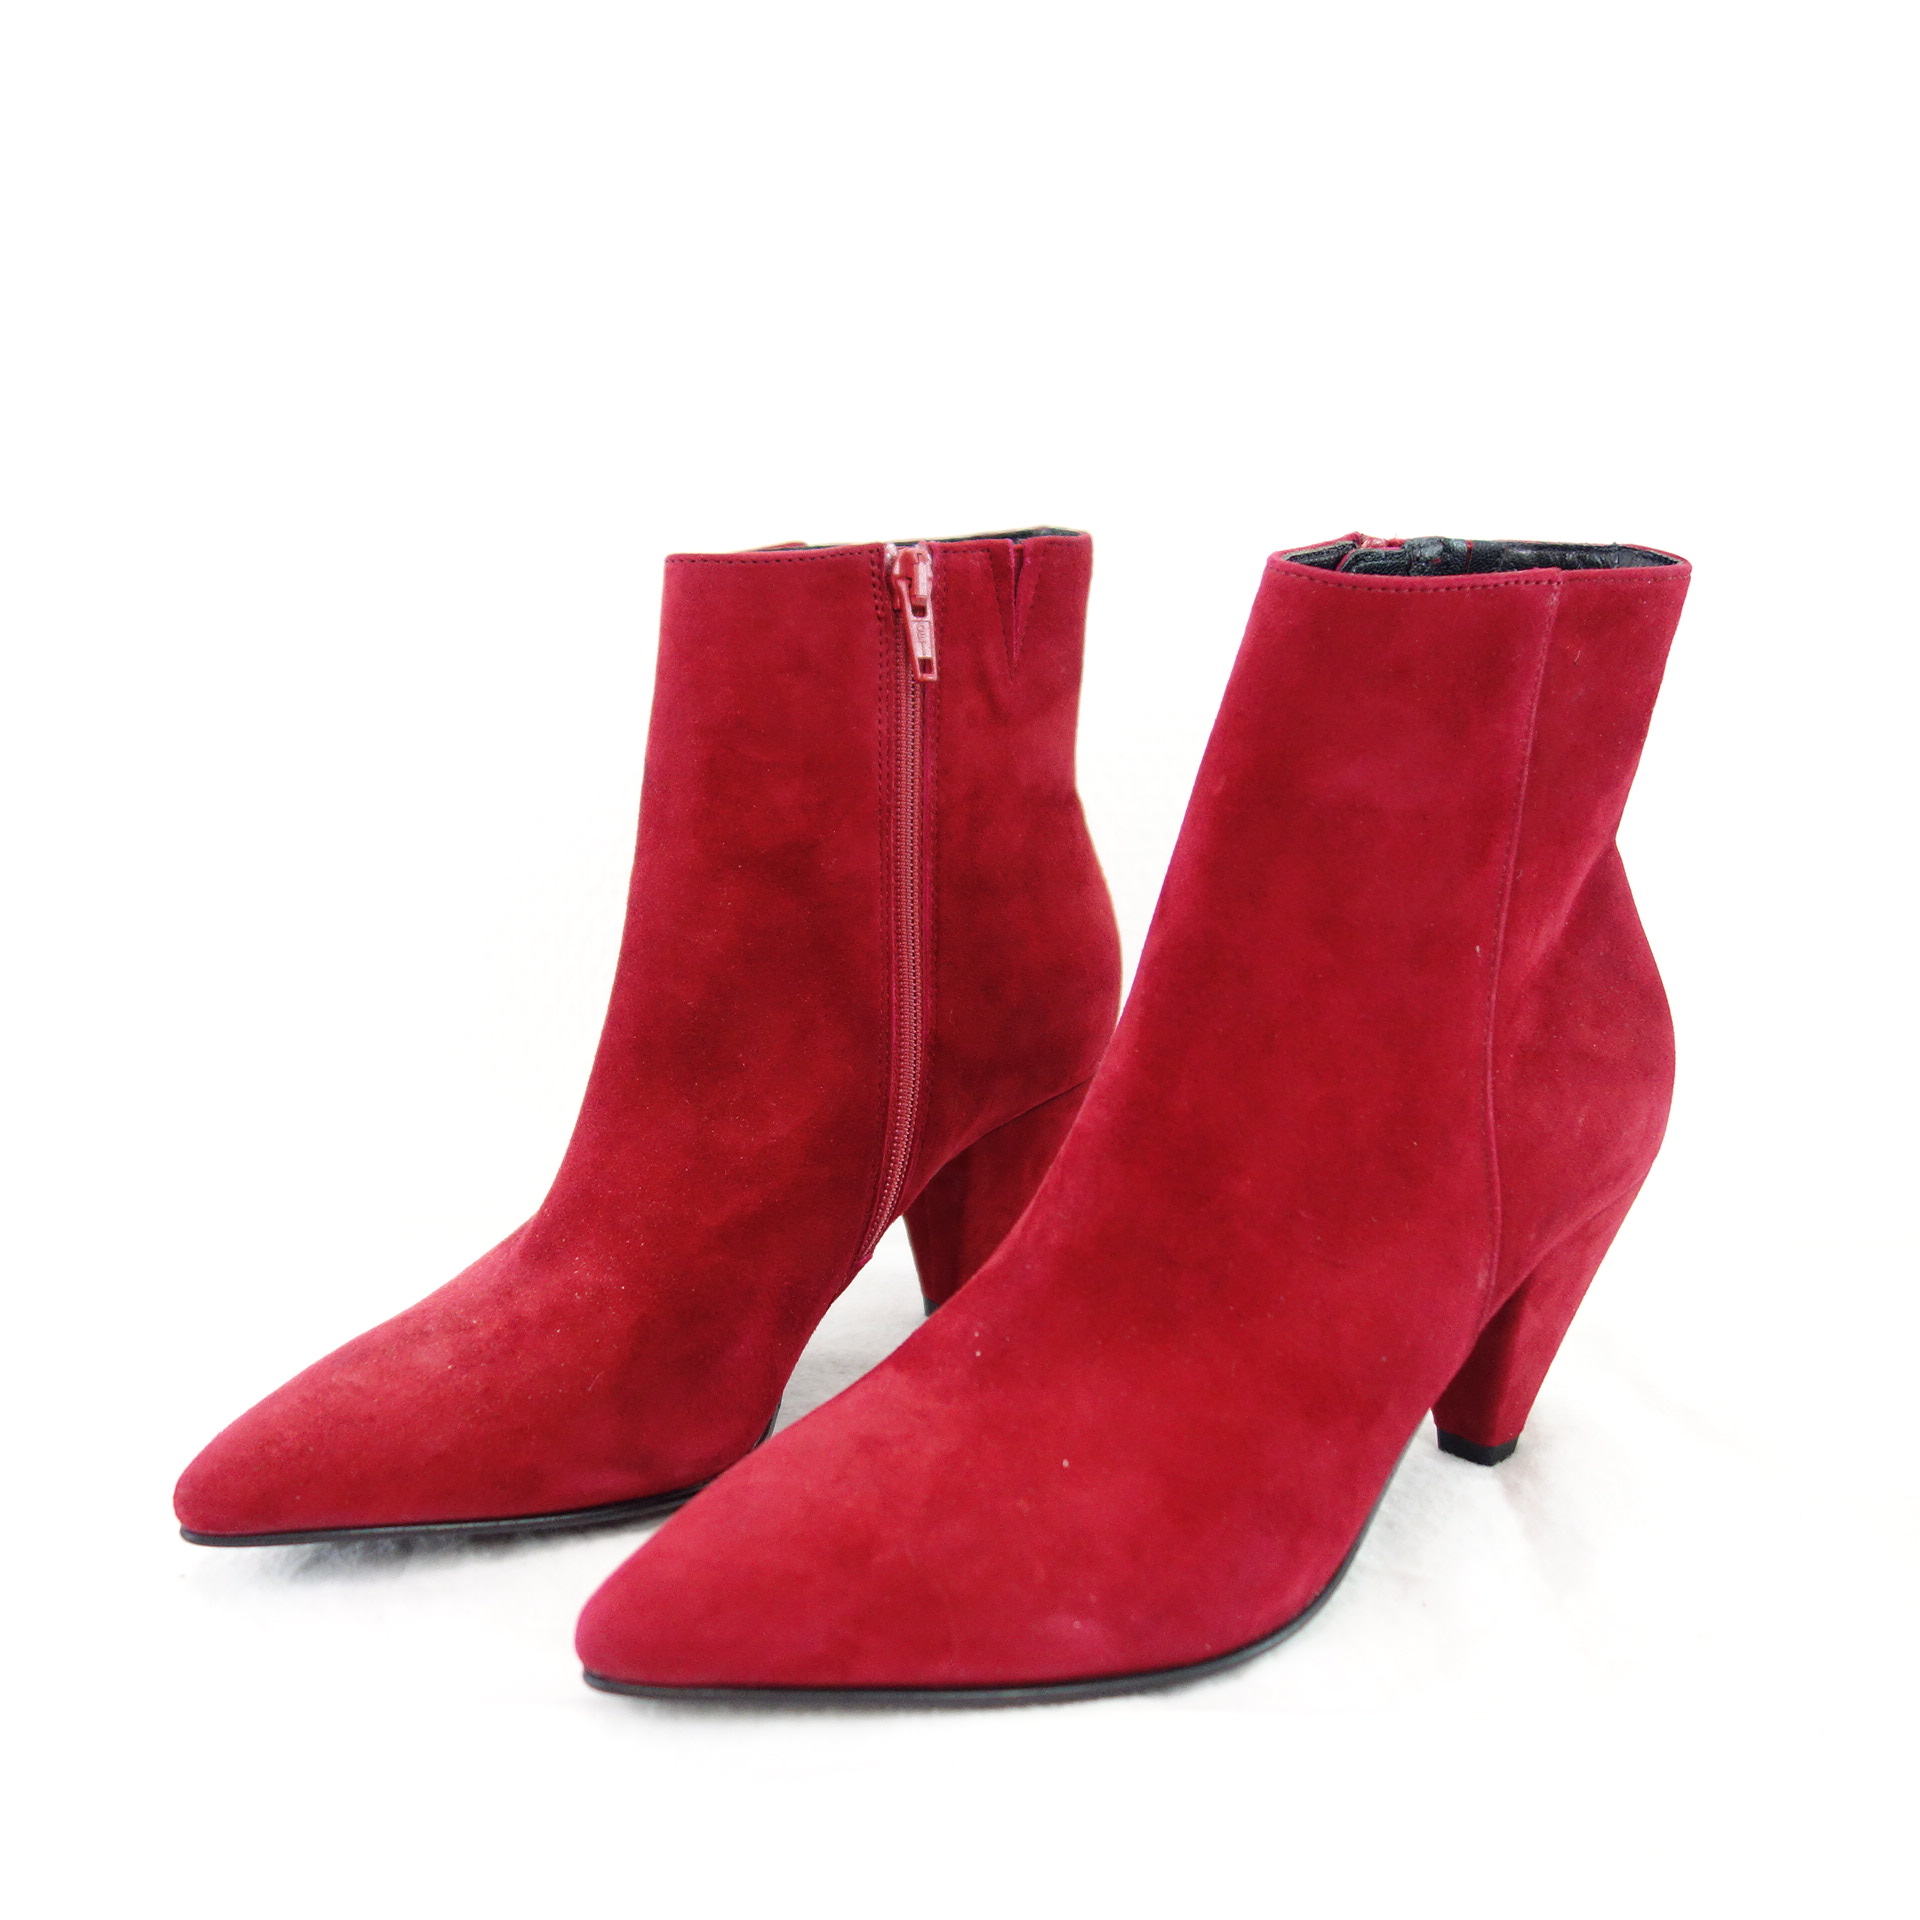 KENNEL & SCHMENGER Damen Schuhe Stiefeletten Boots Stiefel  Leder Rot Spitz 36 Np 220 Neu